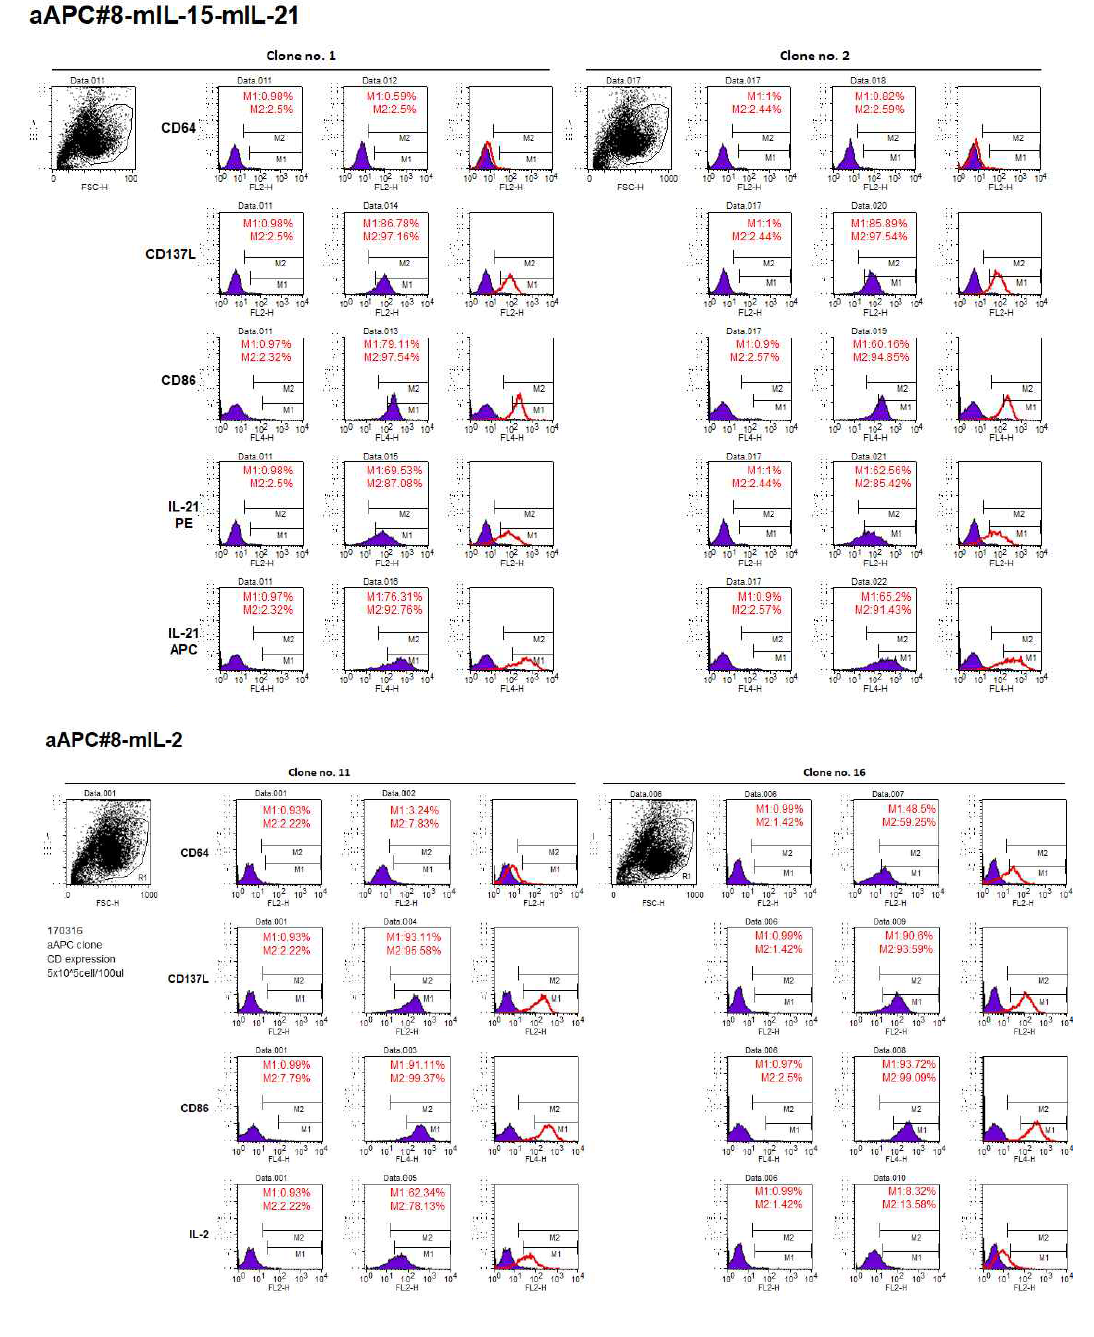 선정된 aAPC에서의 CD64, CD137L, CD86, mIL-21, mIL-2 발현 확인 (flow cytometry)